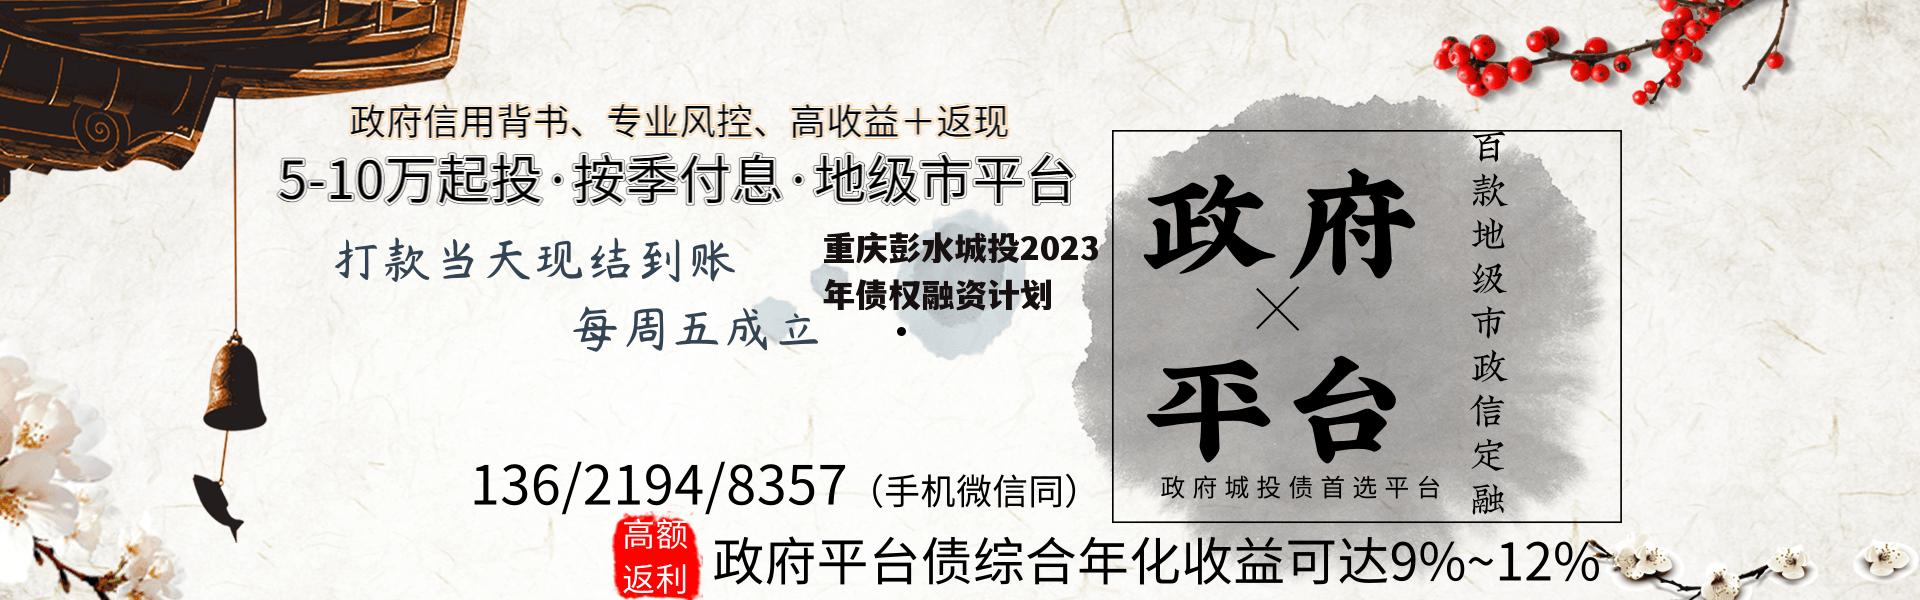 重庆彭水城投2023年债权融资计划